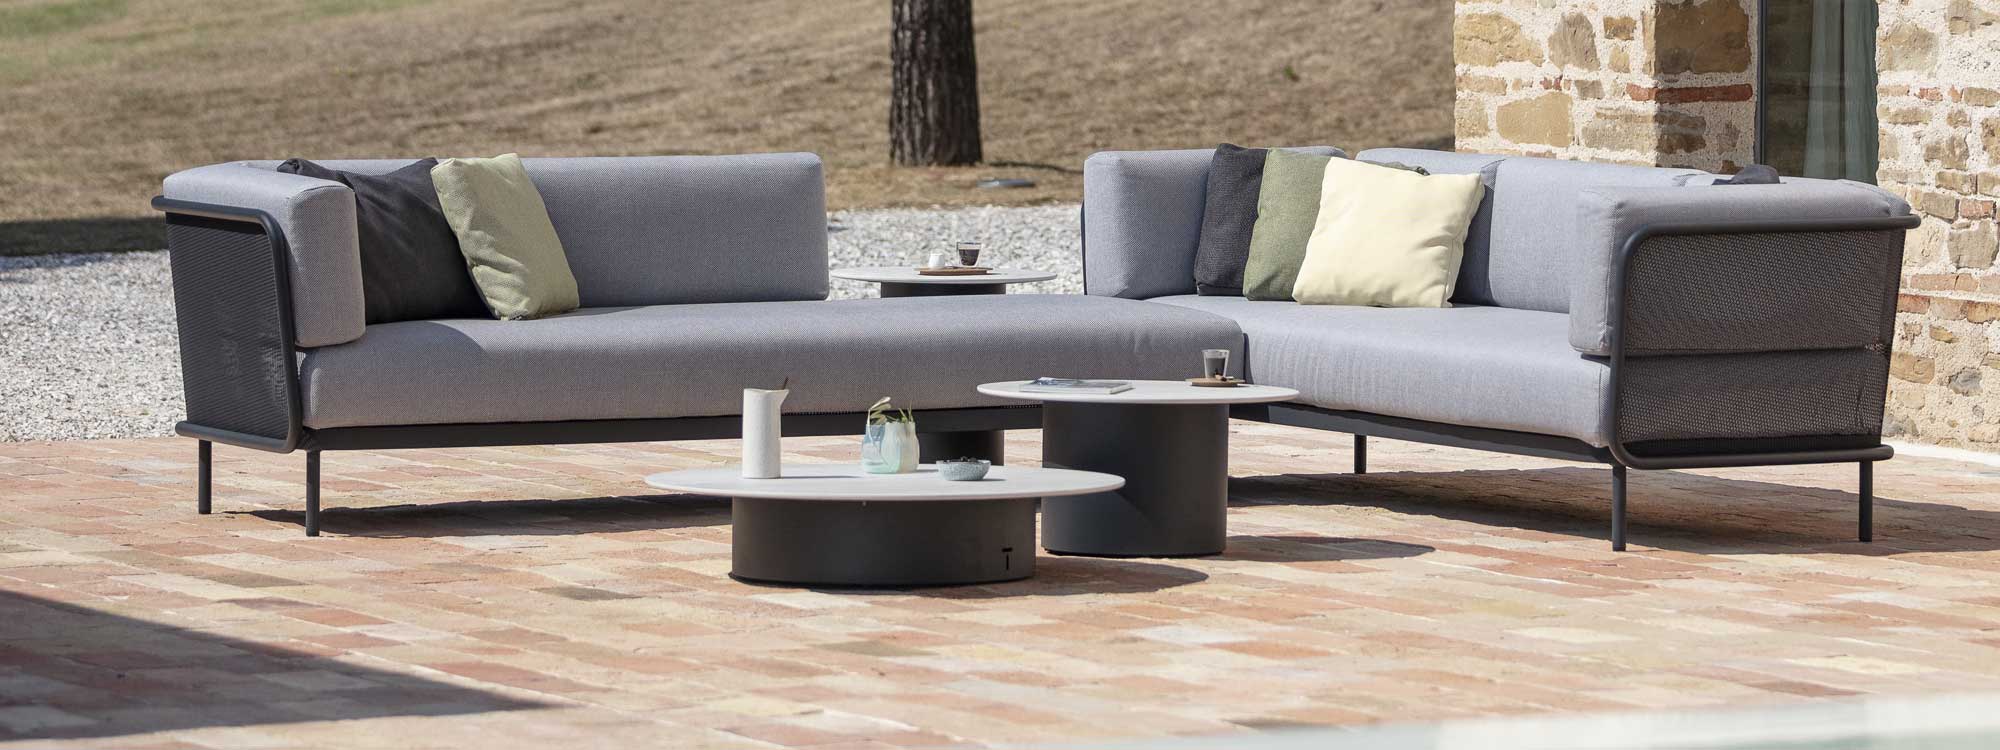 Branta modern garden coffee tables with Baza modular garden sofa on sunny terrace